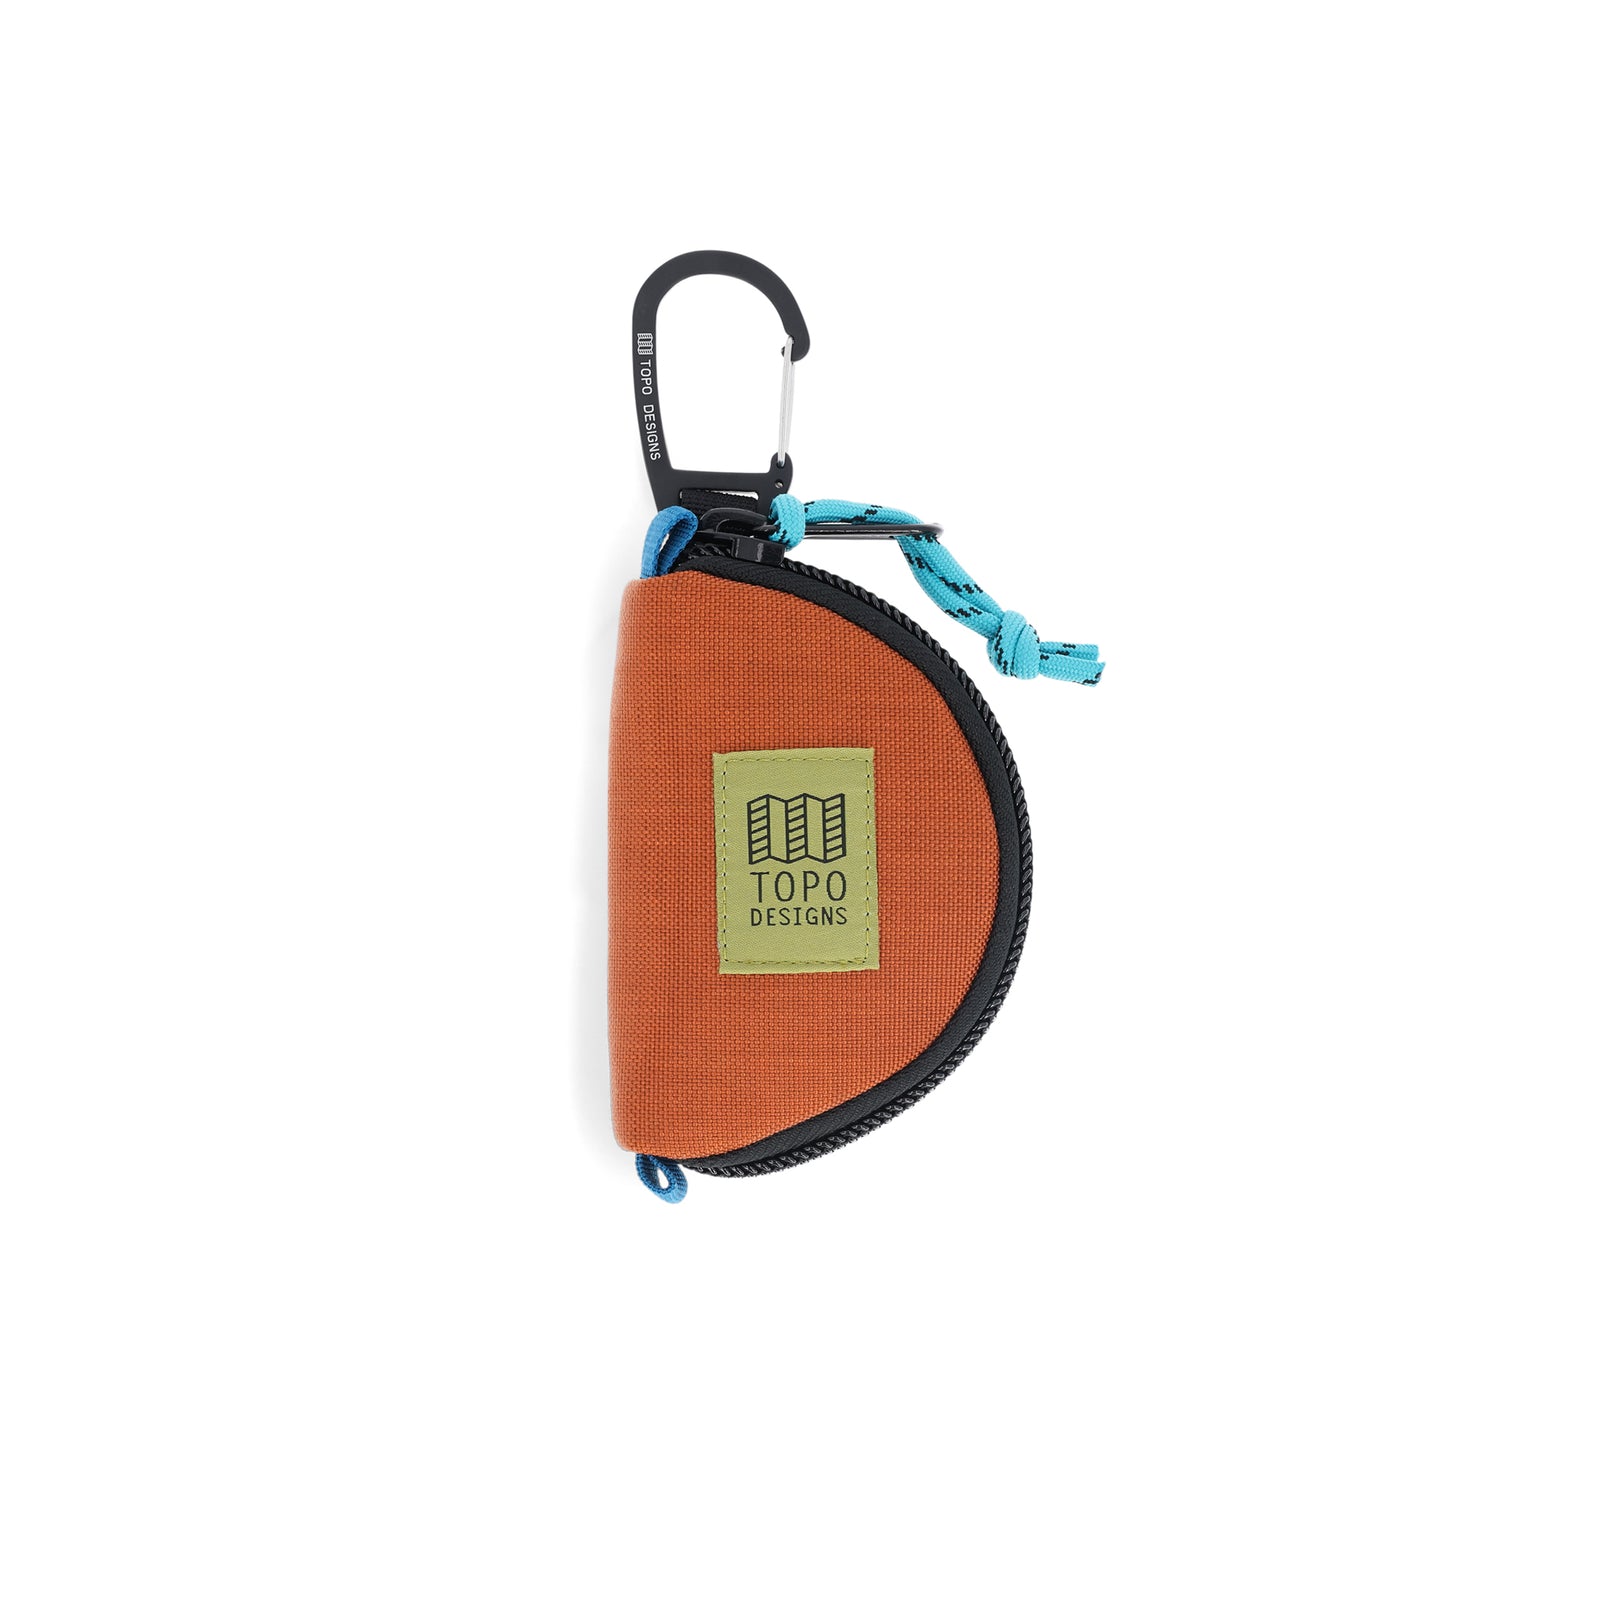 Topo Designs Taco Bag carabiner key clip keychain bag in "Clay" orange nylon.